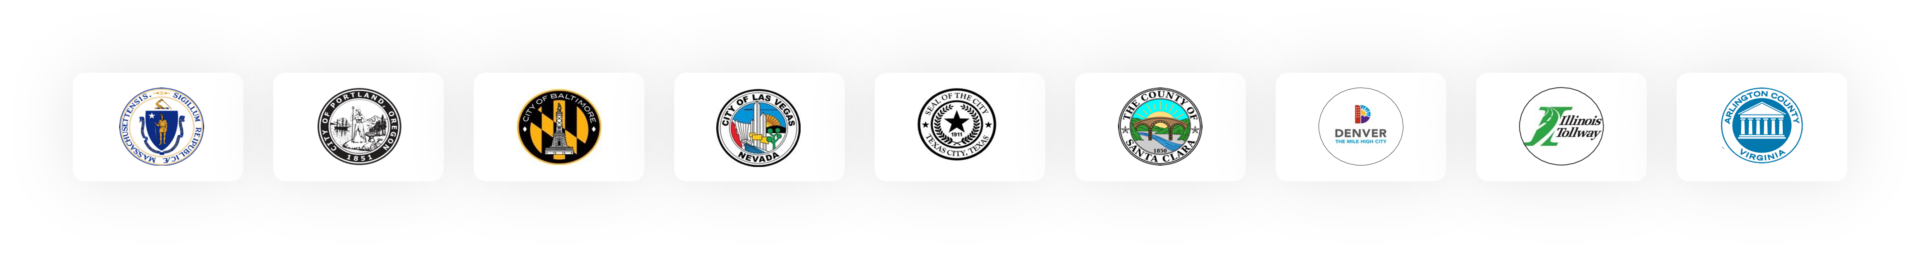 traffic-partner-logos